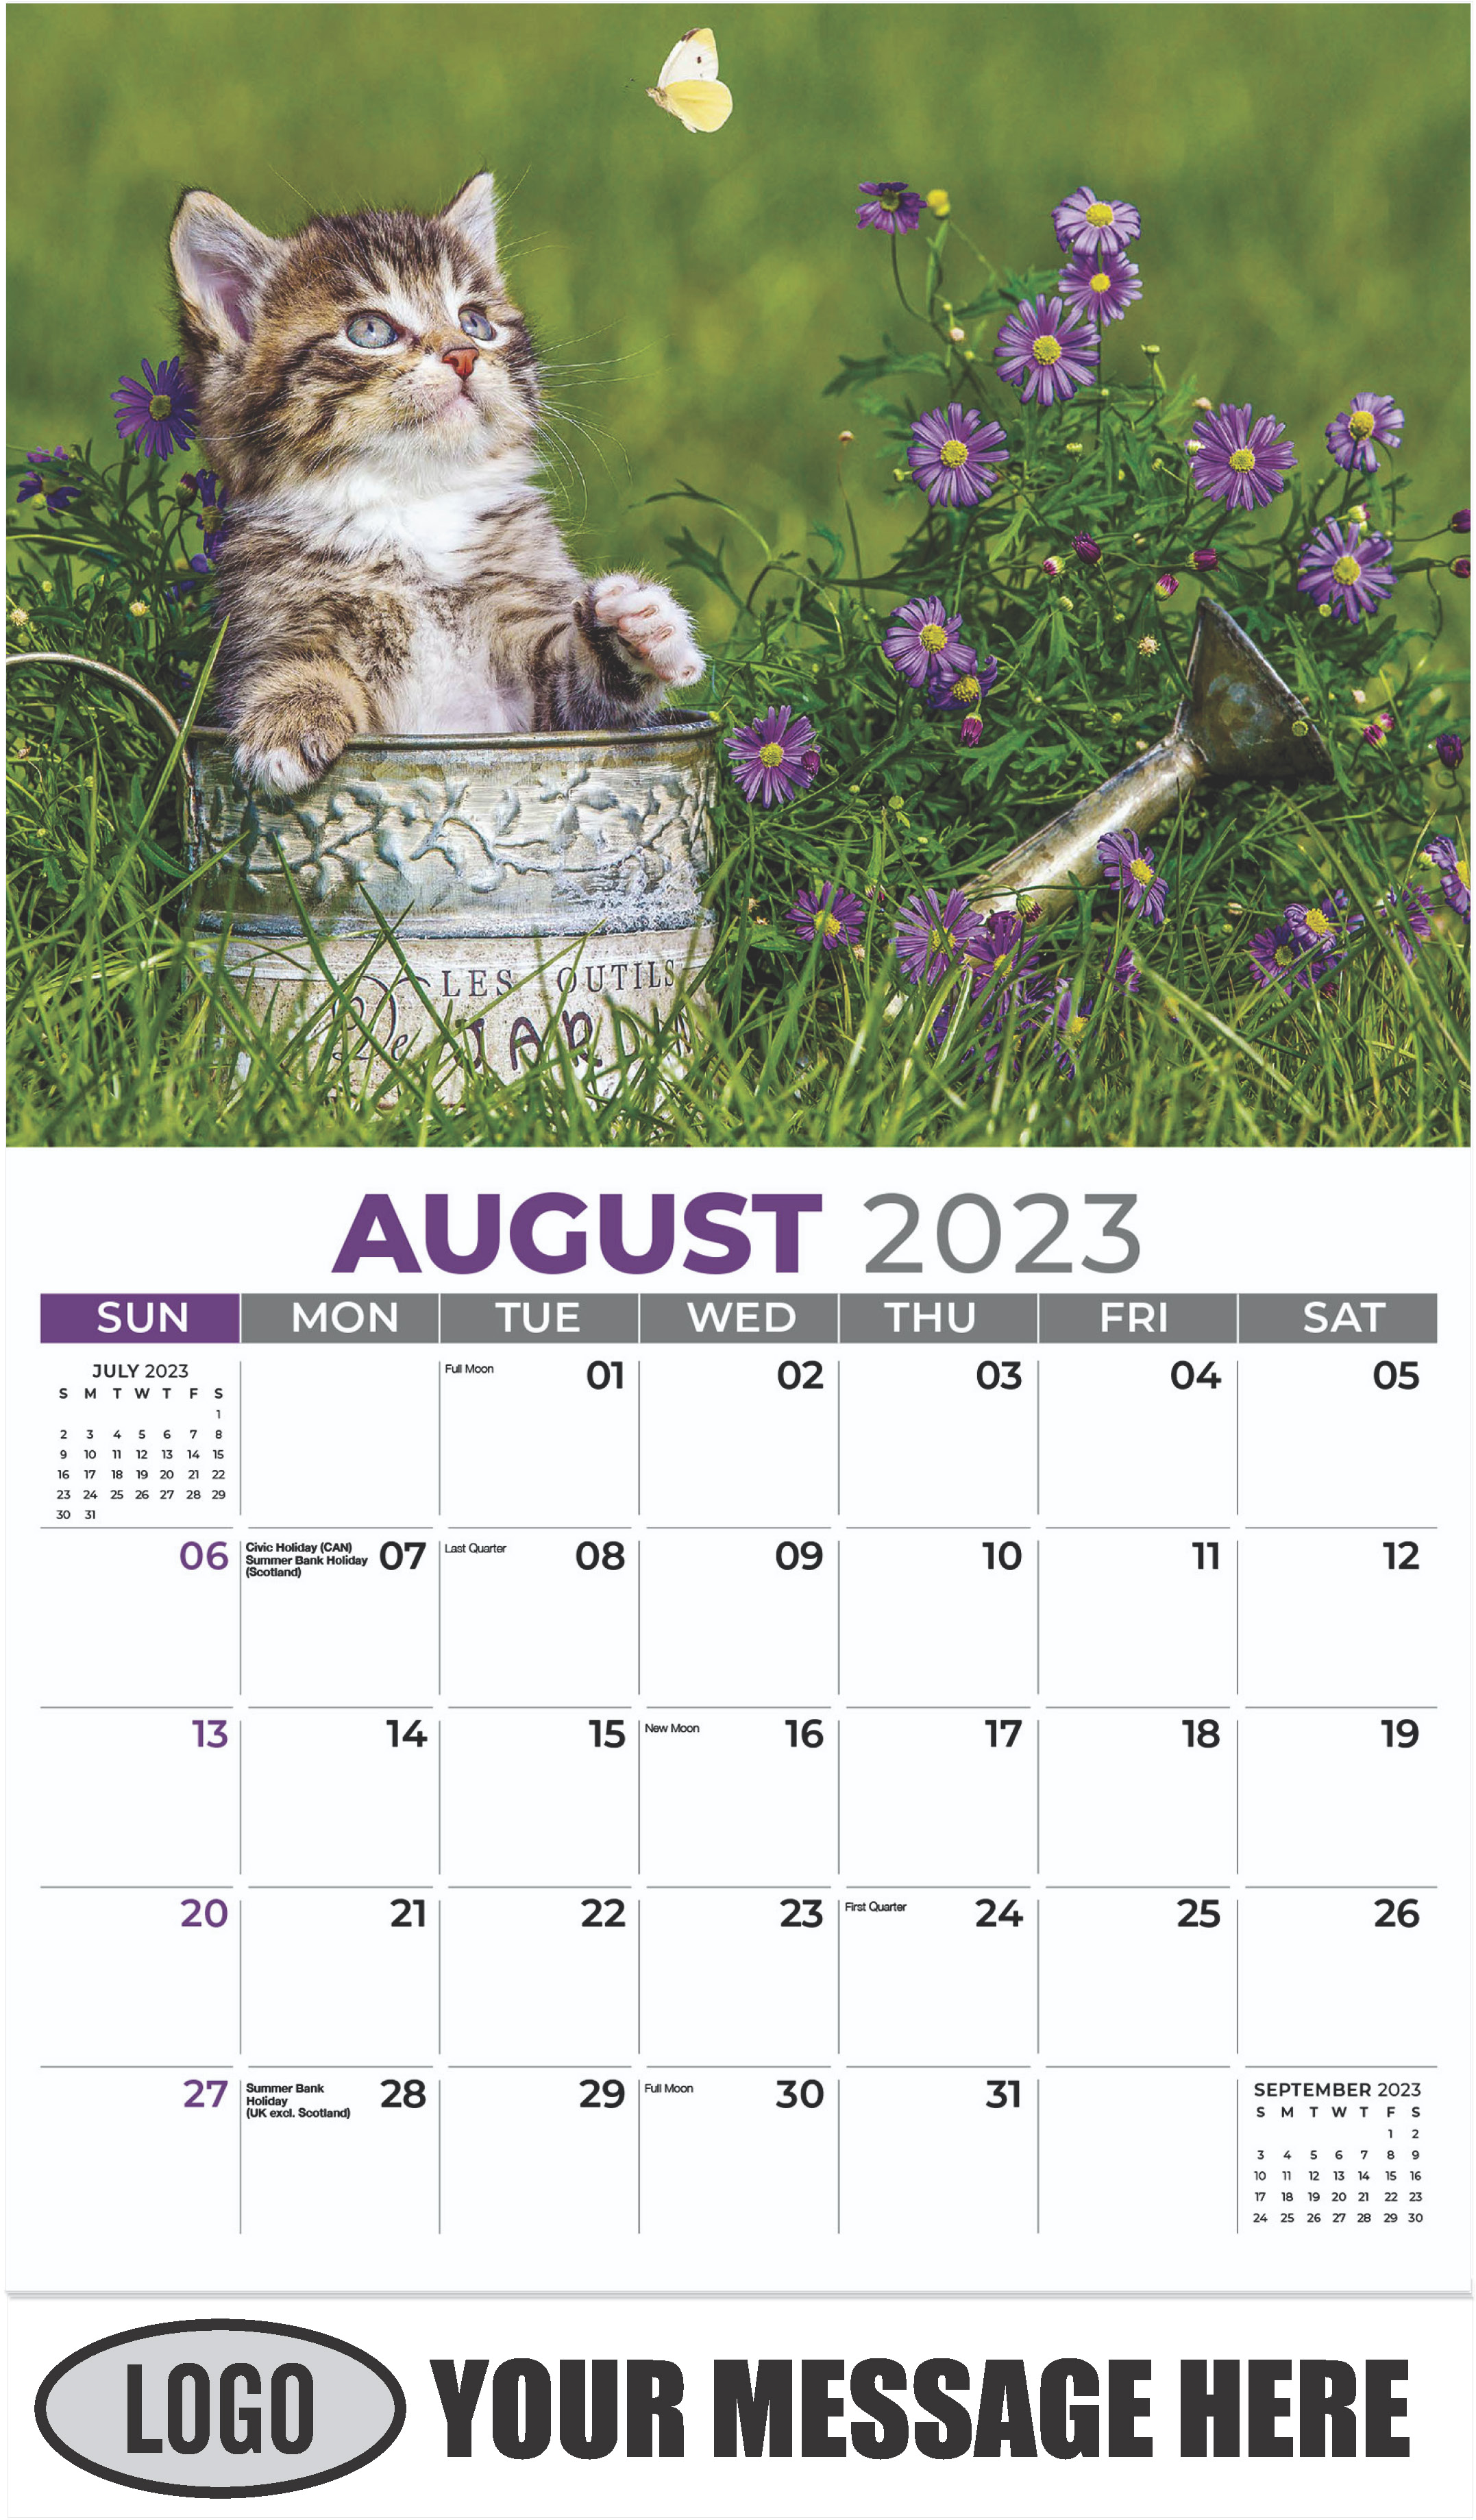 Tabby - August - Kittens 2023 Promotional Calendar